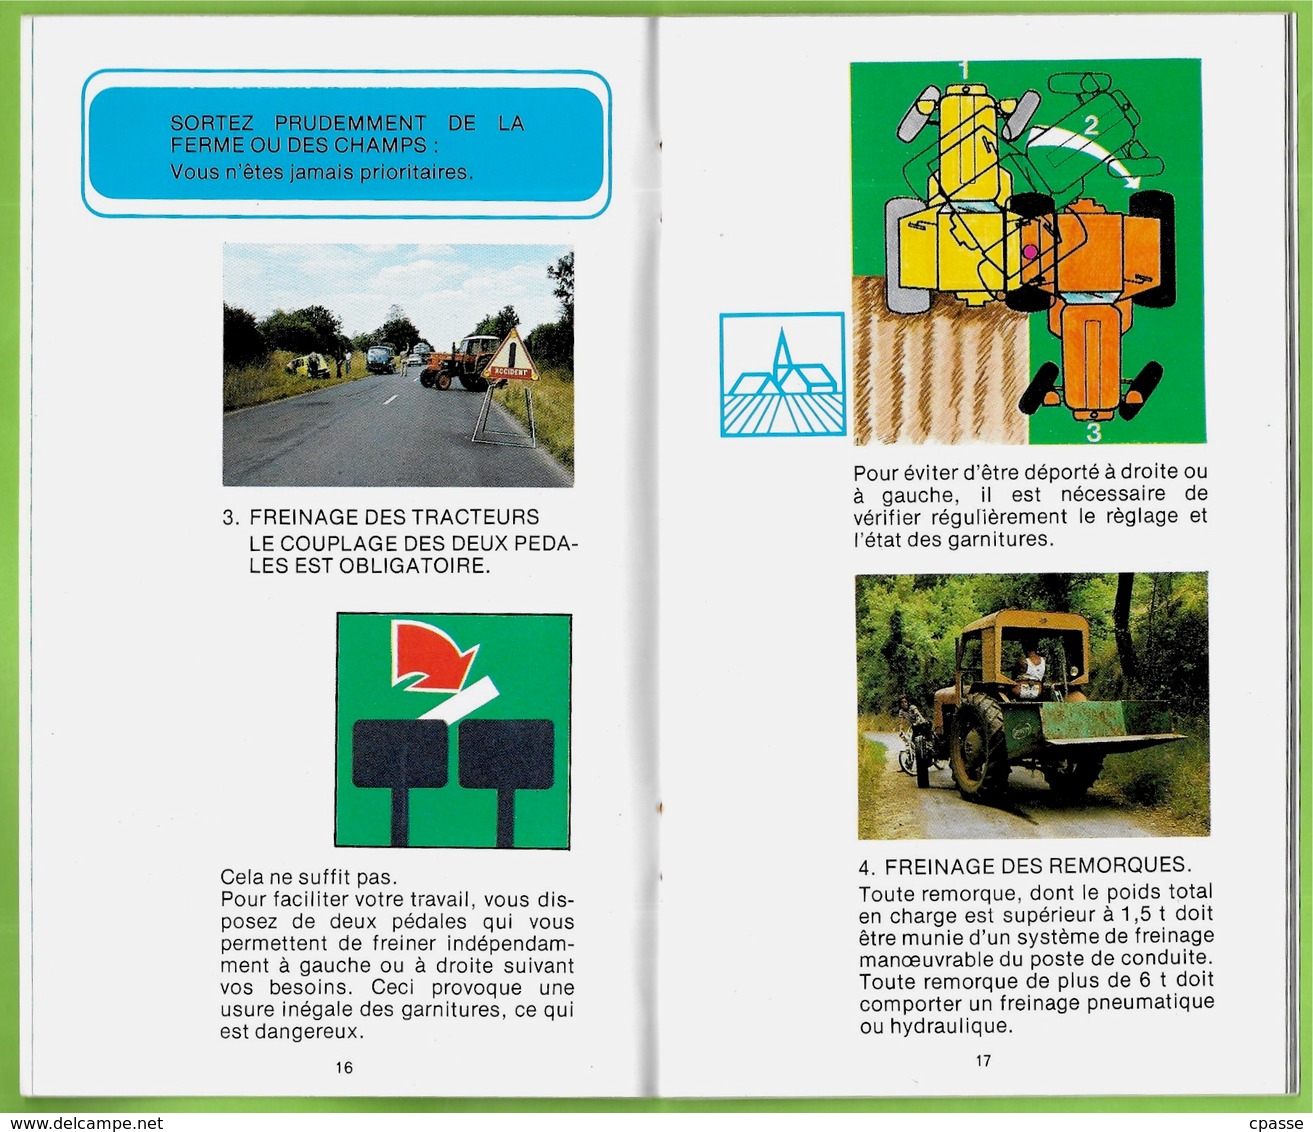 Brochure "LE TRACTEUR et votre sécurité" publiée par les Assurances Mutuelles Agricoles ** Agriculture